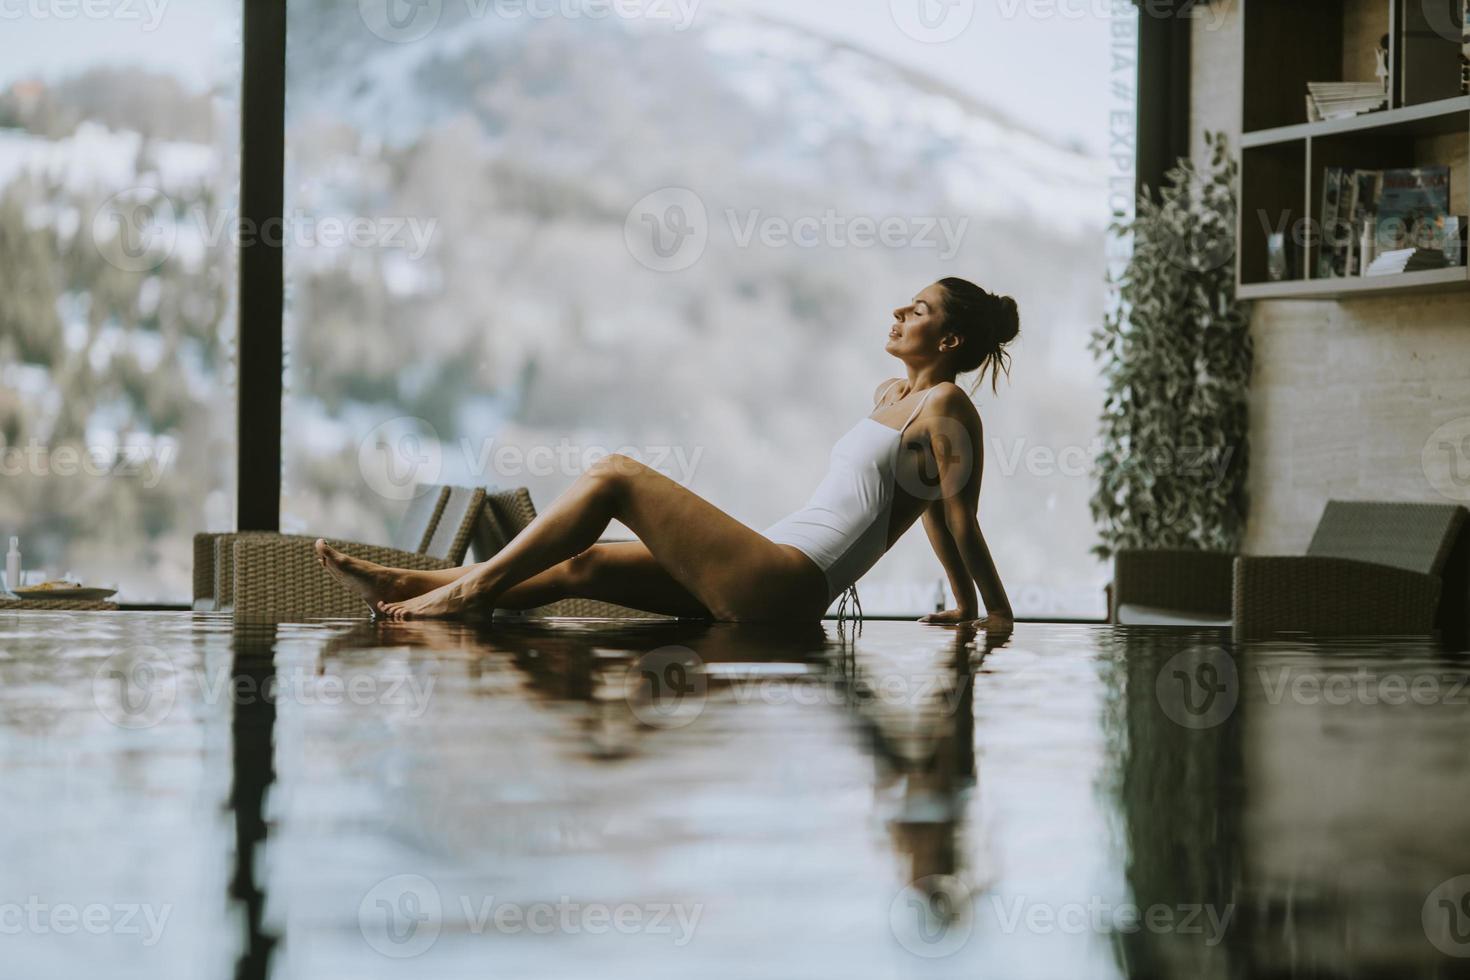 giovane donna che si rilassa a bordo piscina della piscina a sfioro in inverno foto